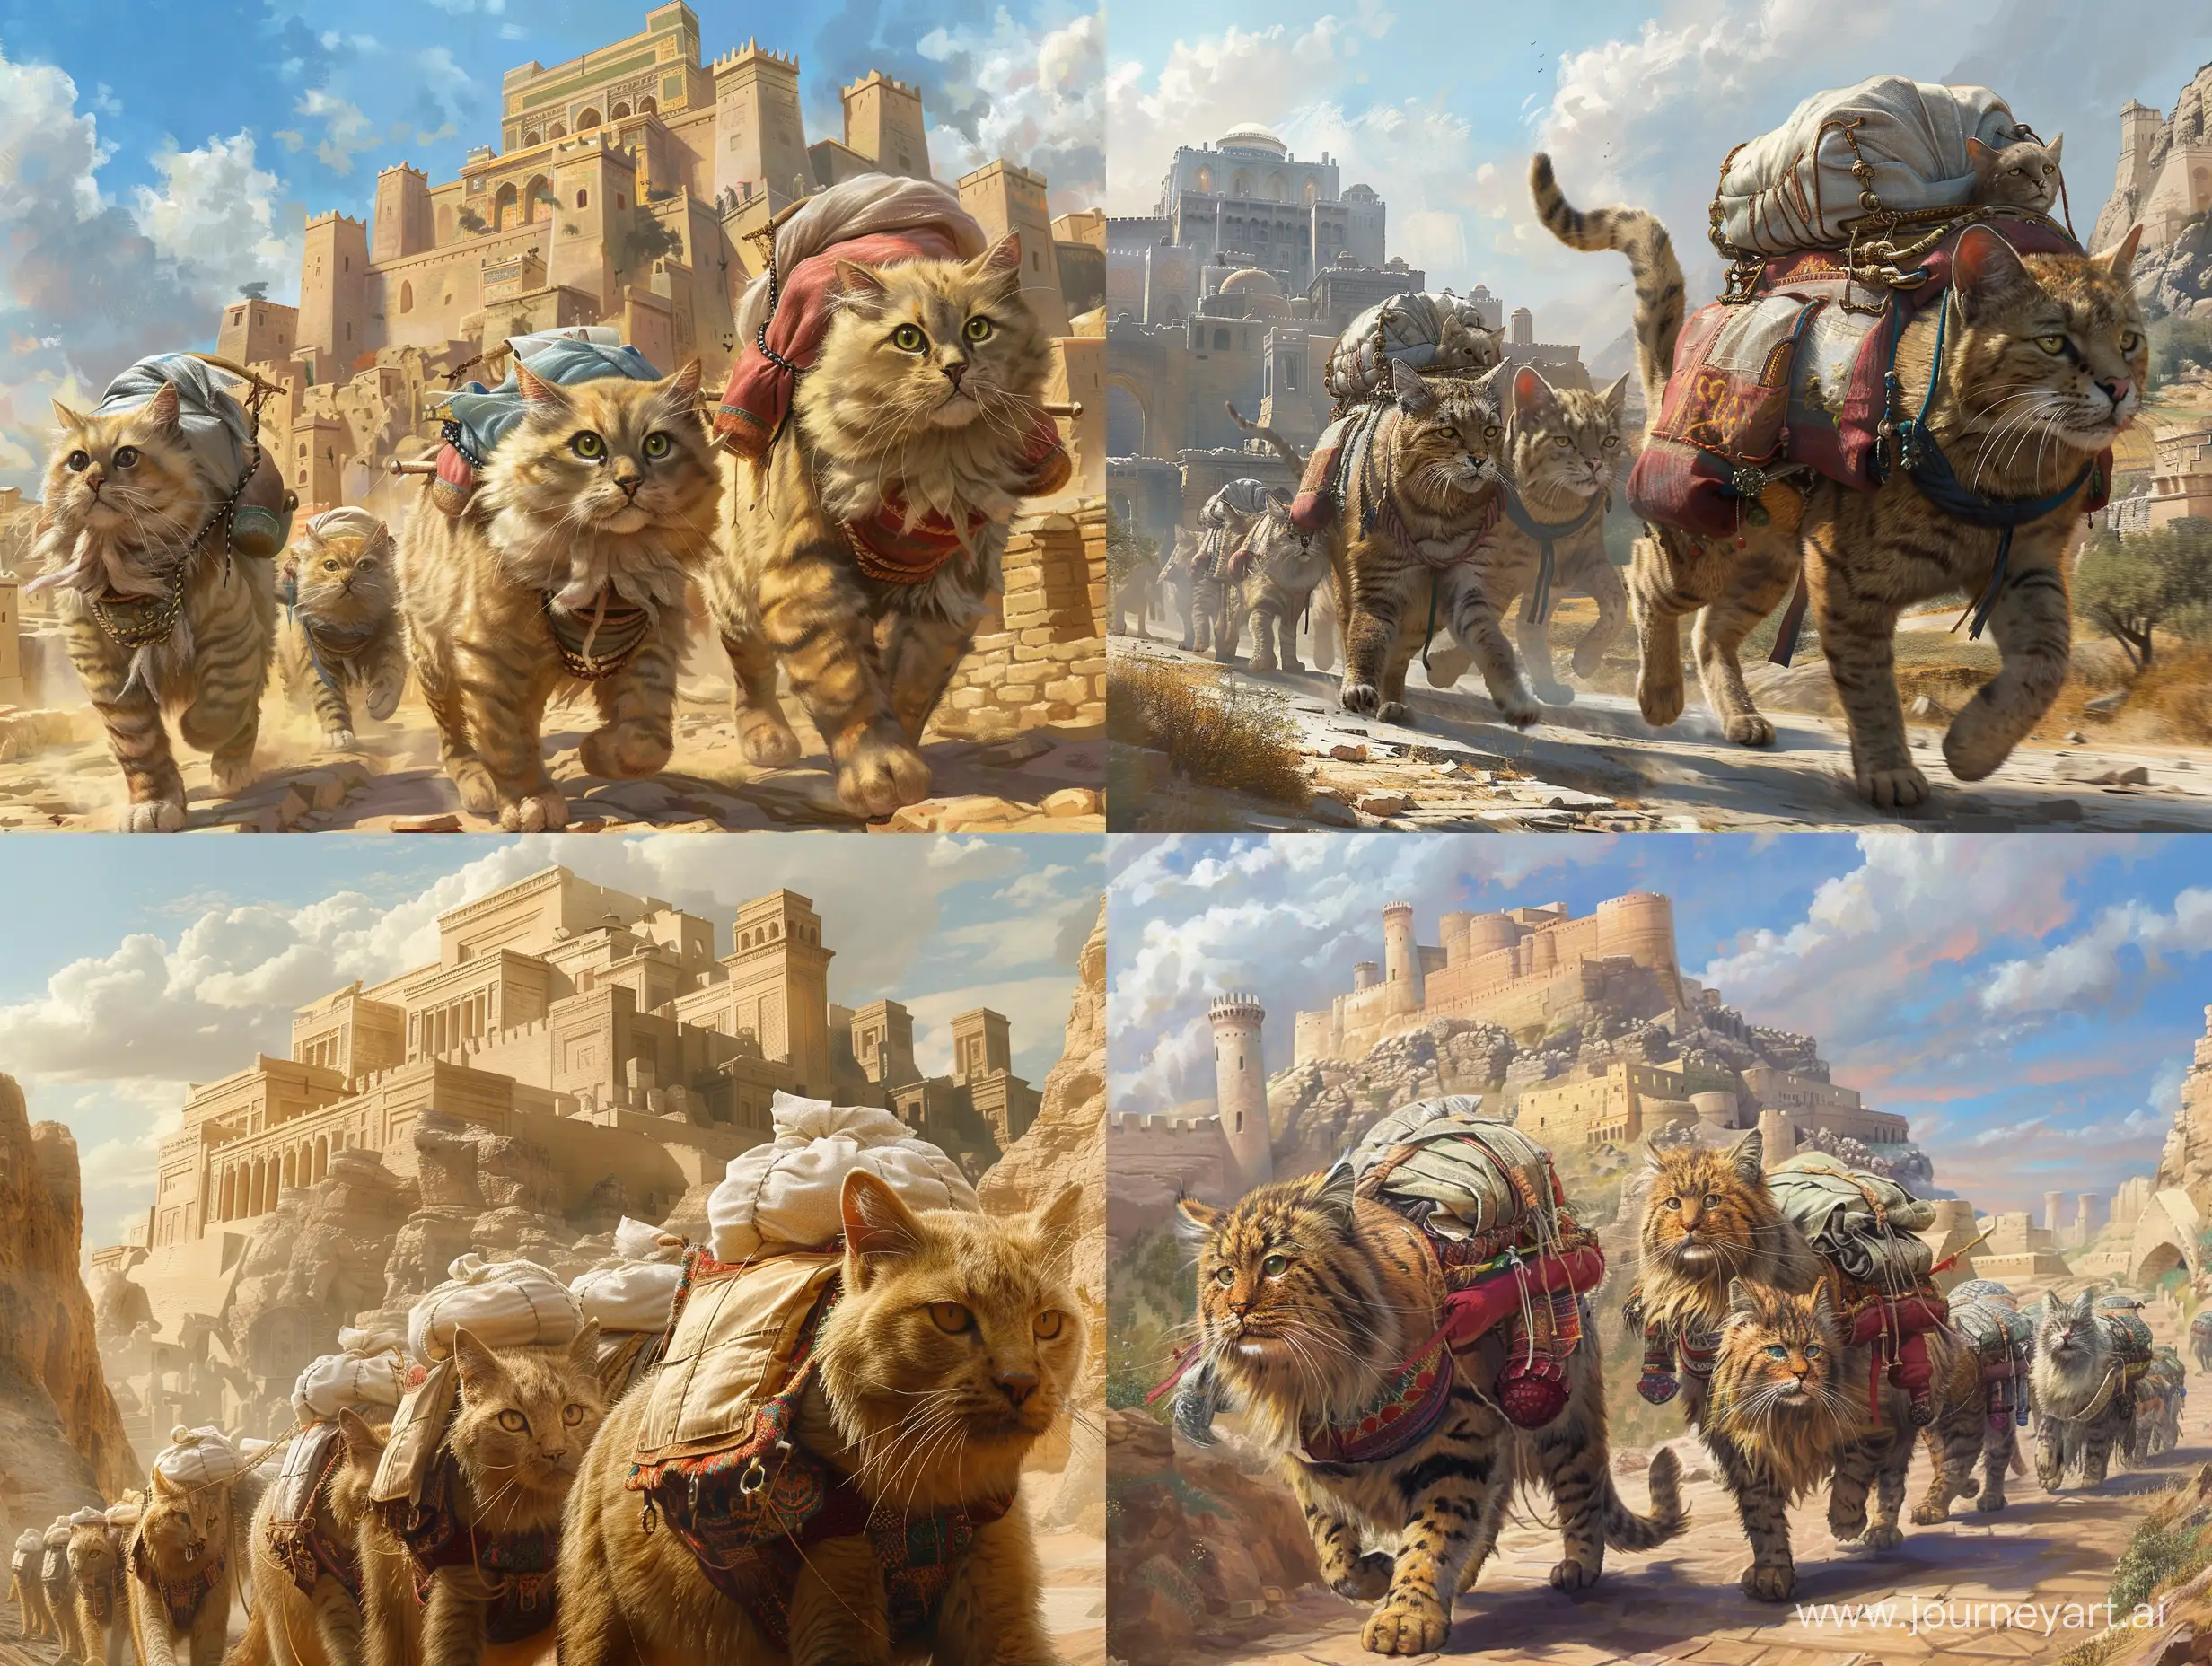 گروهی از گربه های غول پیکر در حالی که بر پشت آنها خورجین هایی پر شده از بافتنی قرار دارد در حال حرکت به سمت شهر باستانی پارس هستند